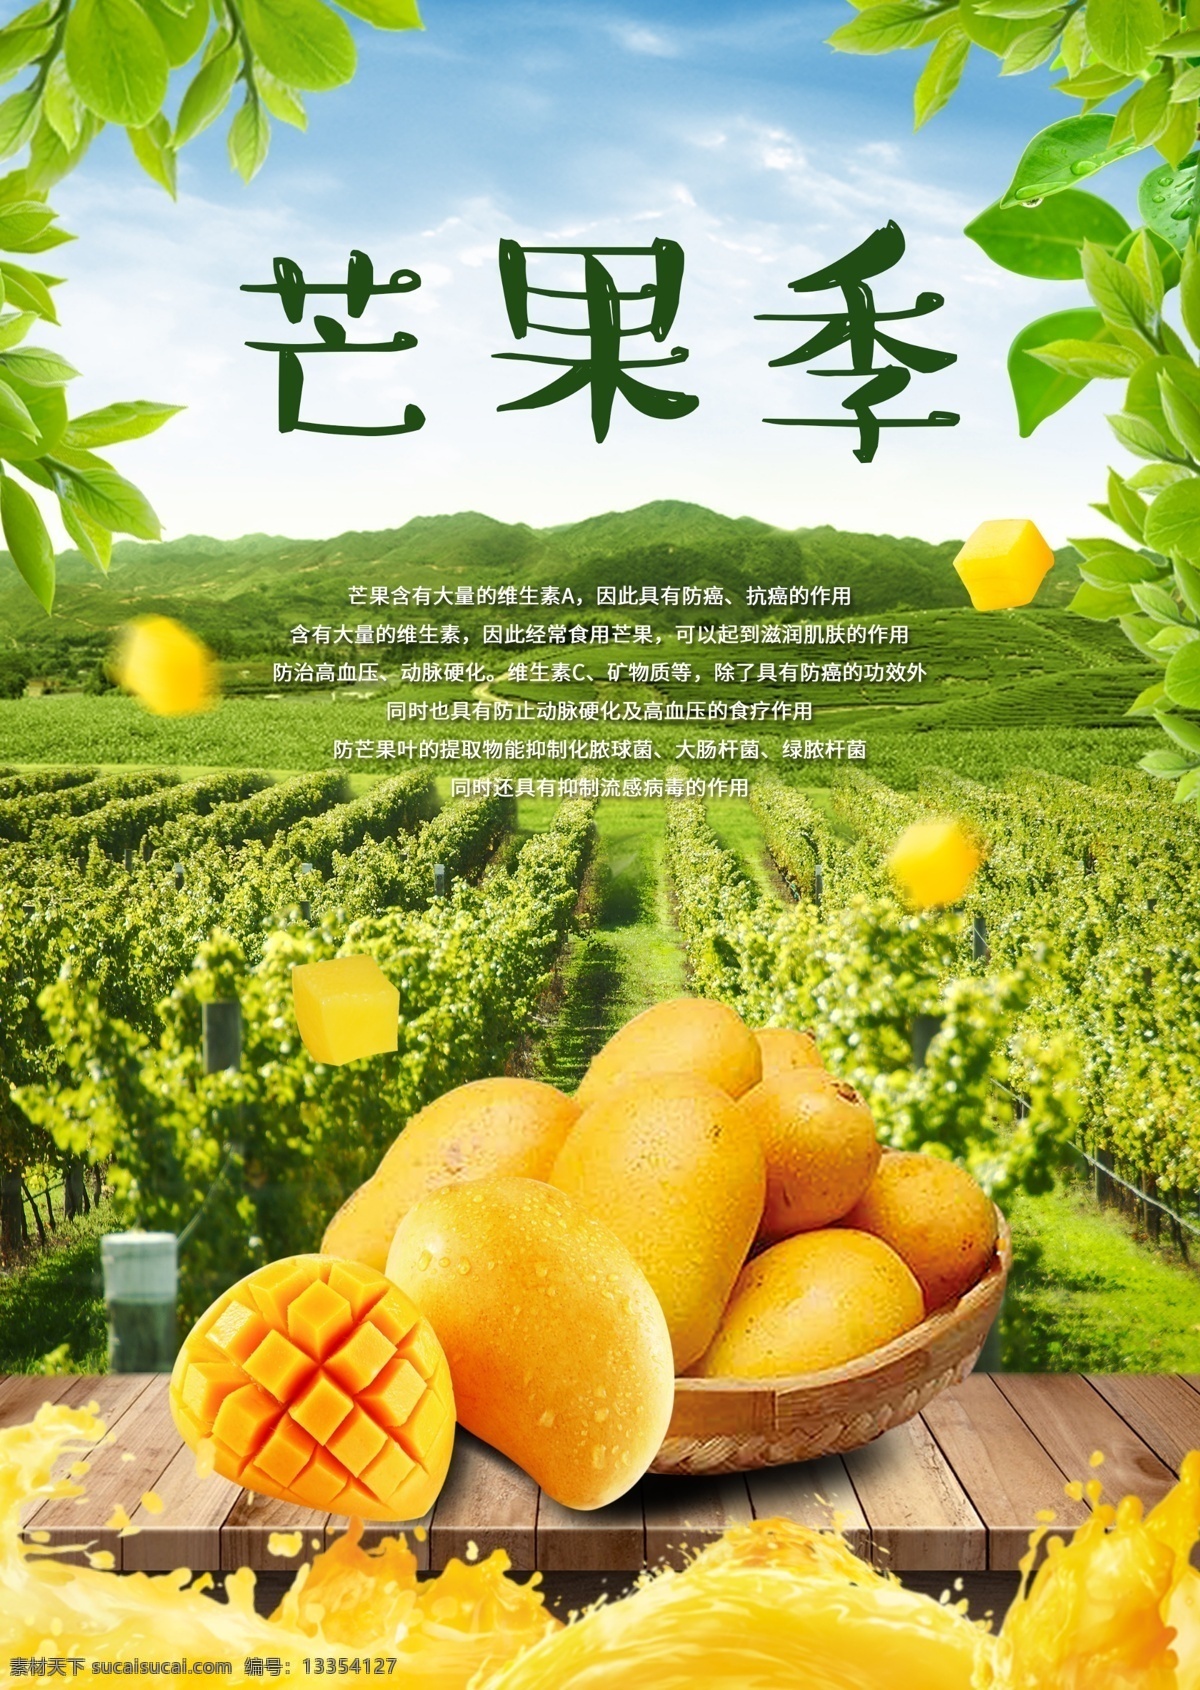 芒果海报 芒果 芒果季 芒果传单 吃芒果 一筐芒果 芒果堆 果粒 平面设计 dm宣传单